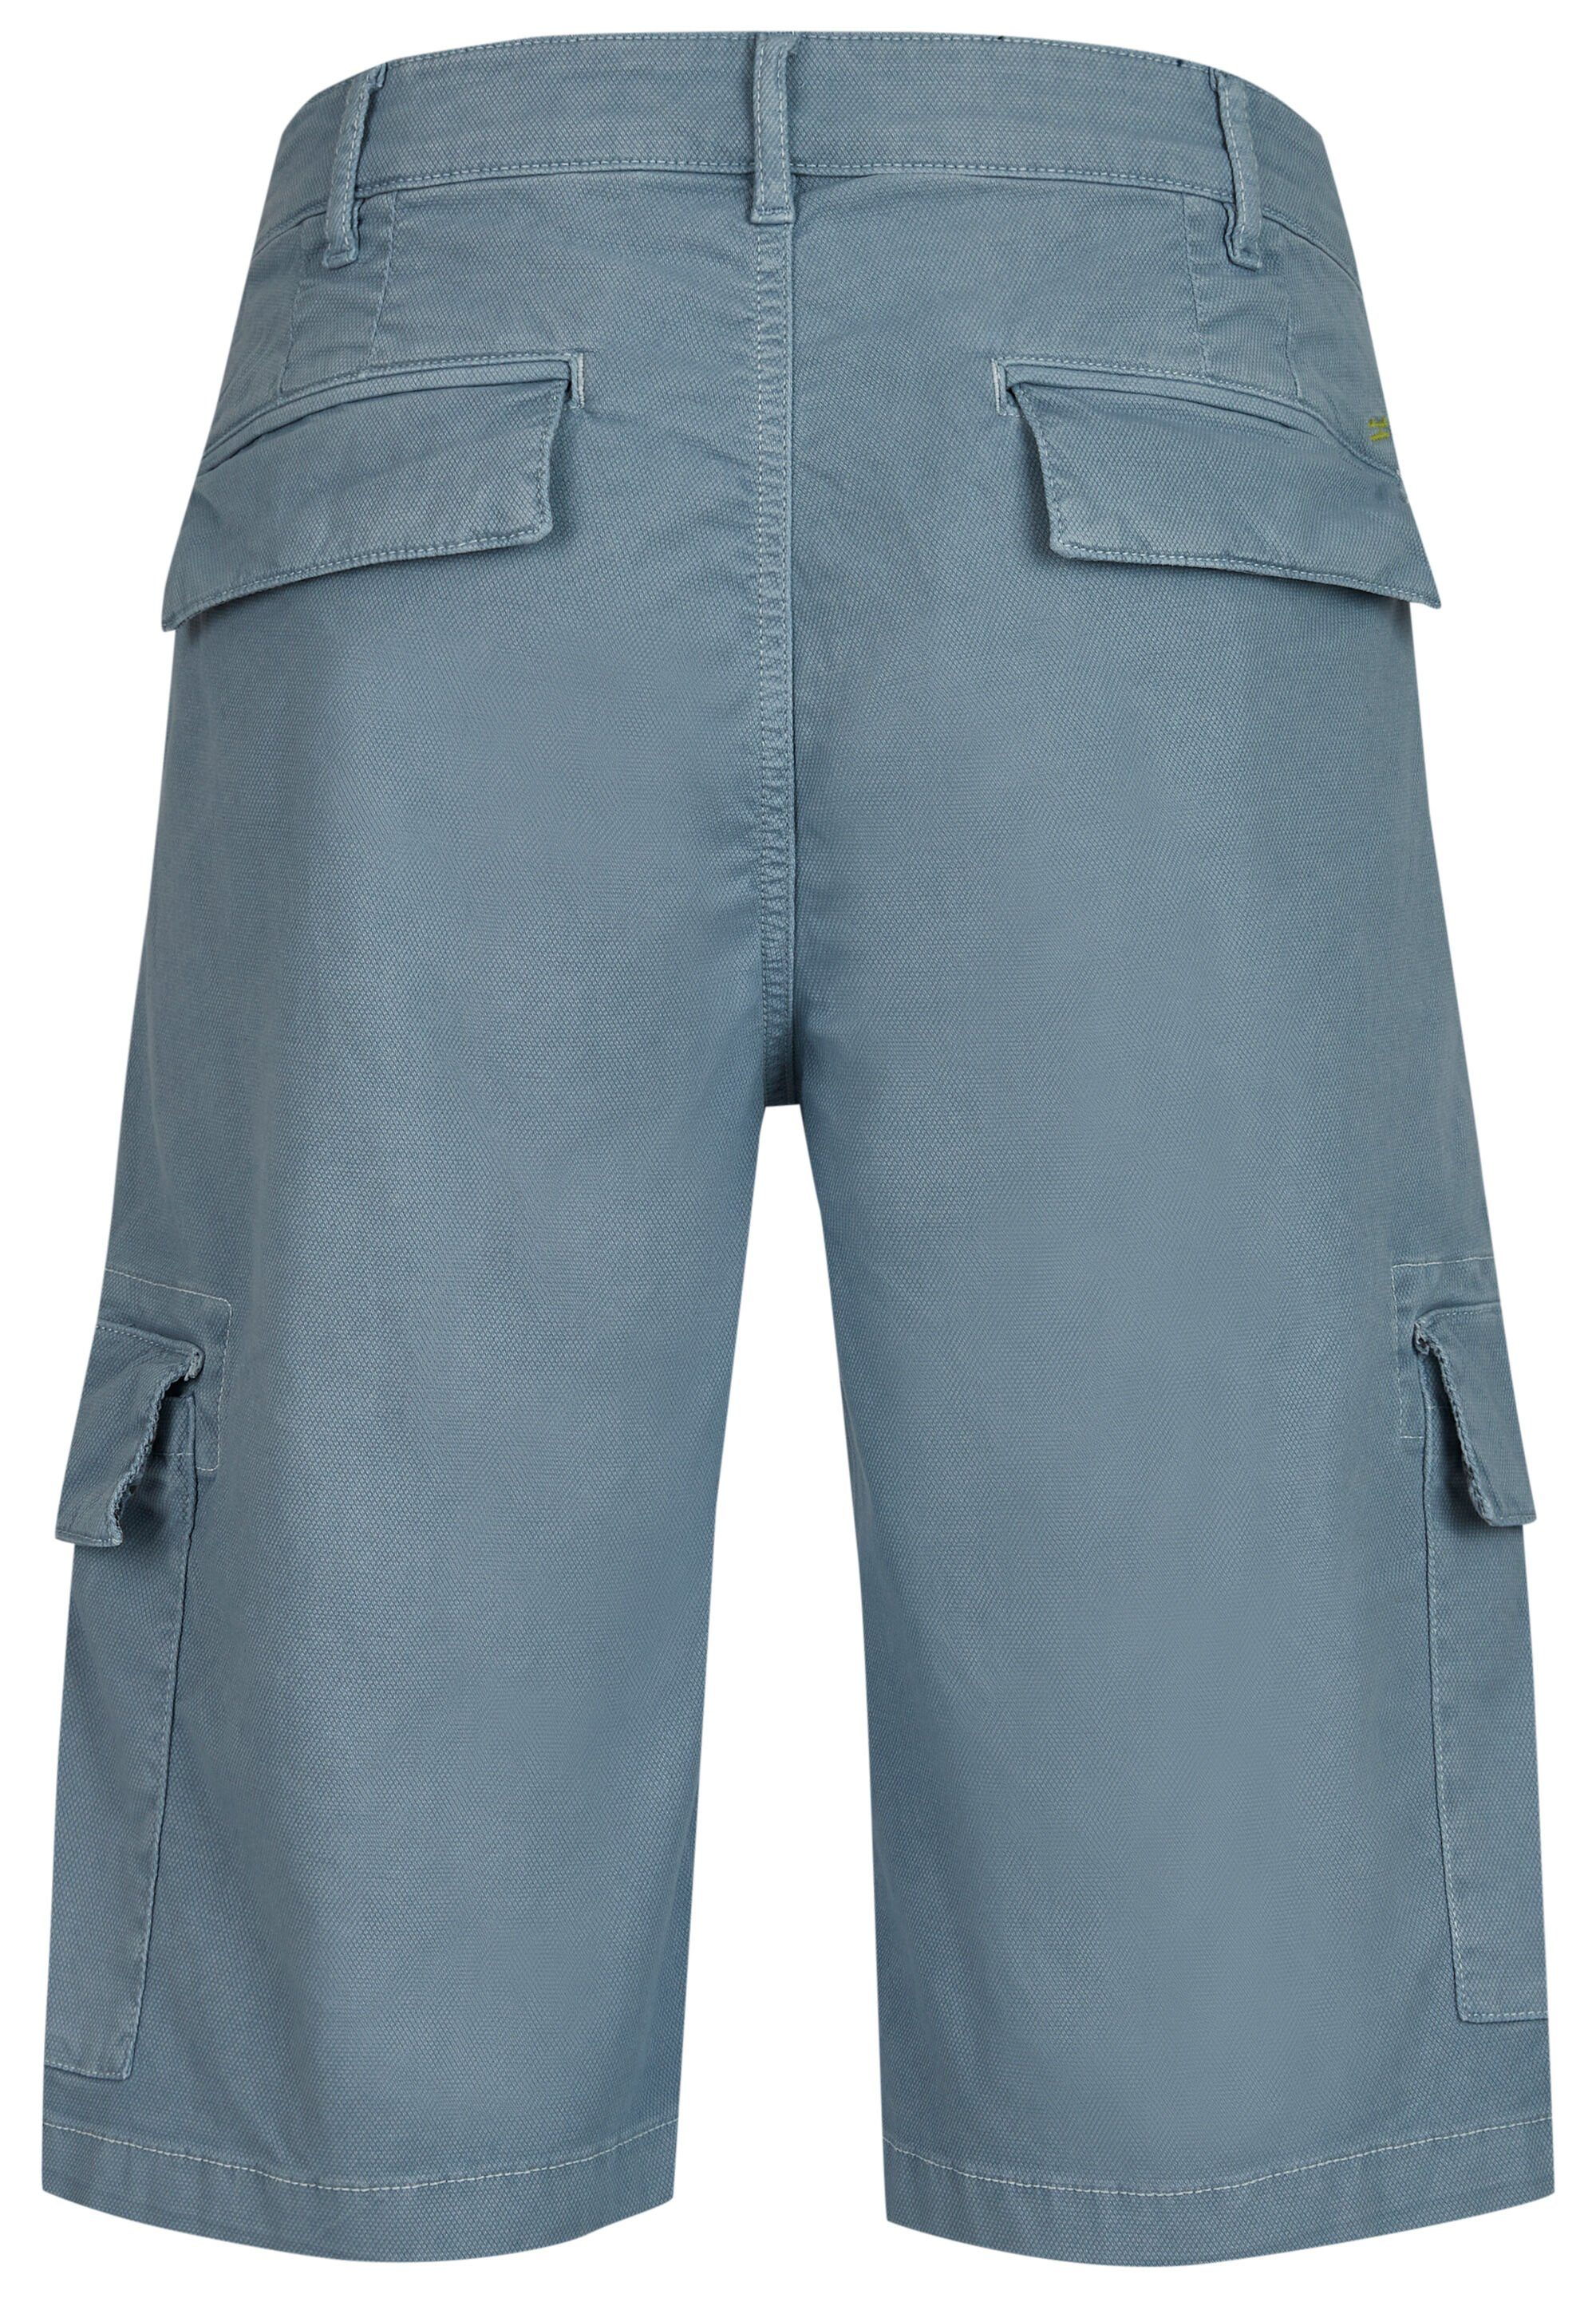 Shorts PARIS HECHTER steel blue